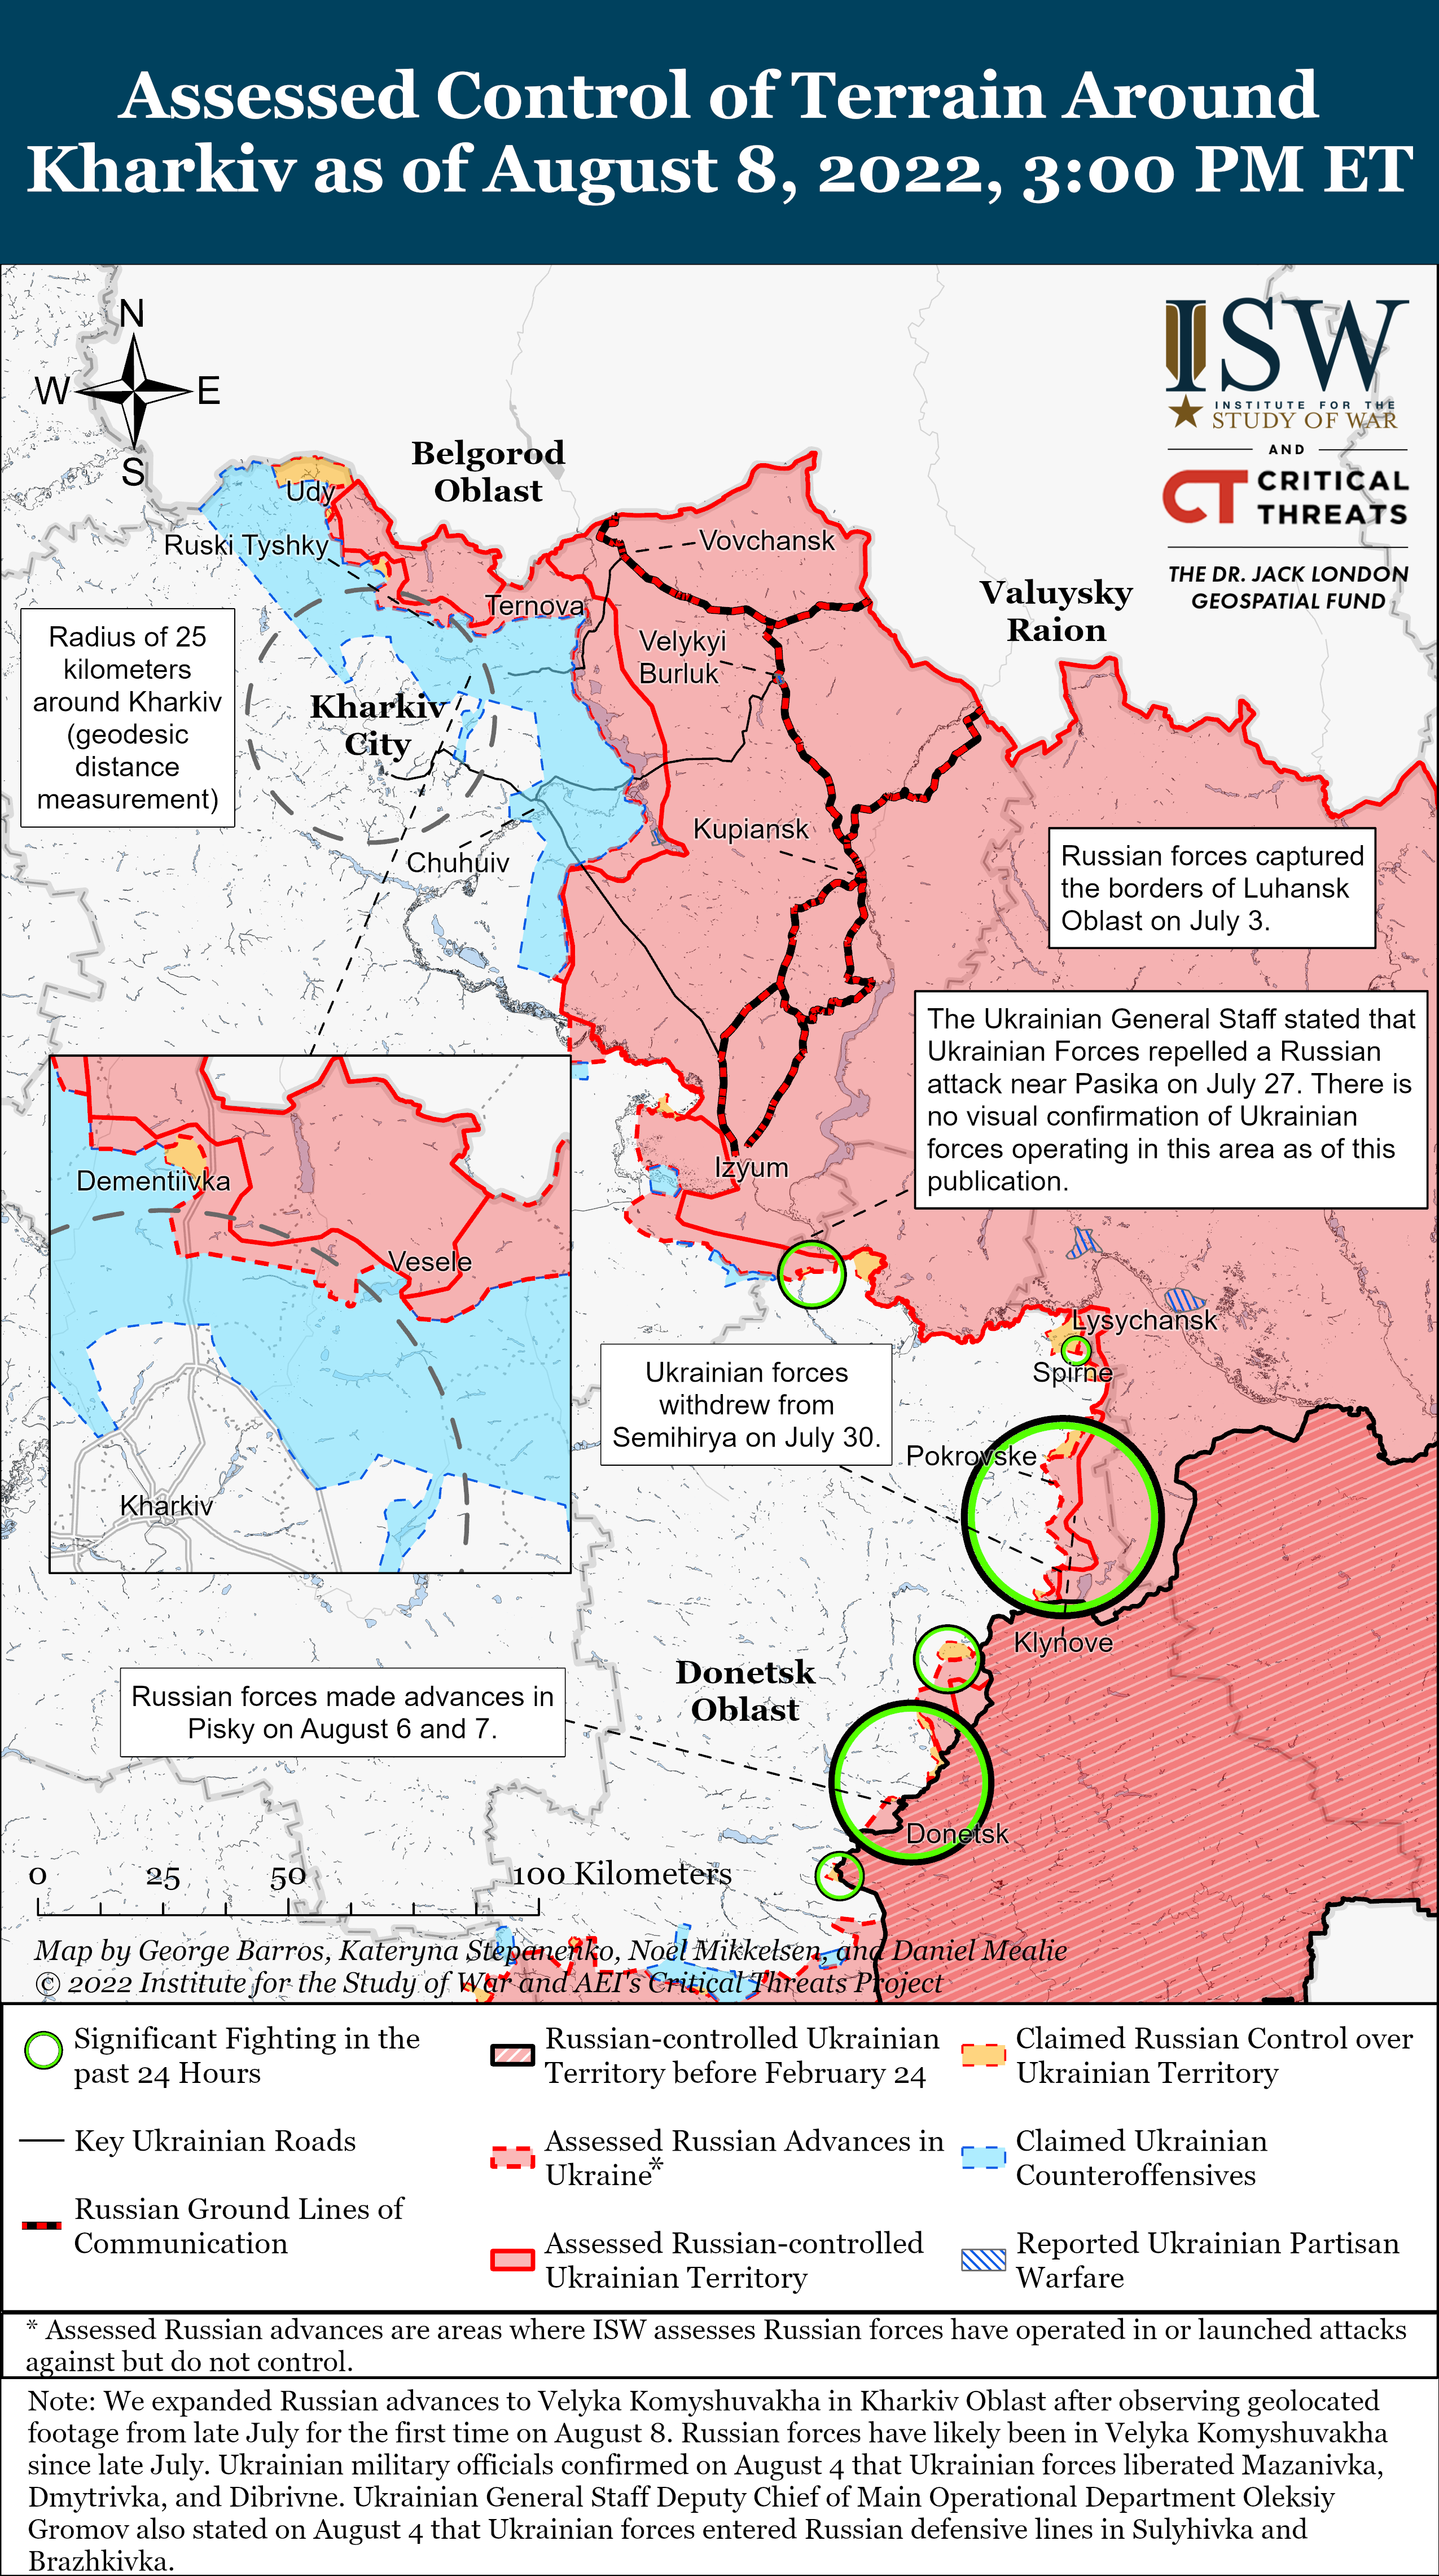 Wie ist der aktuelle Stand (08.08.22) der russischen Truppen in der Ukraine?